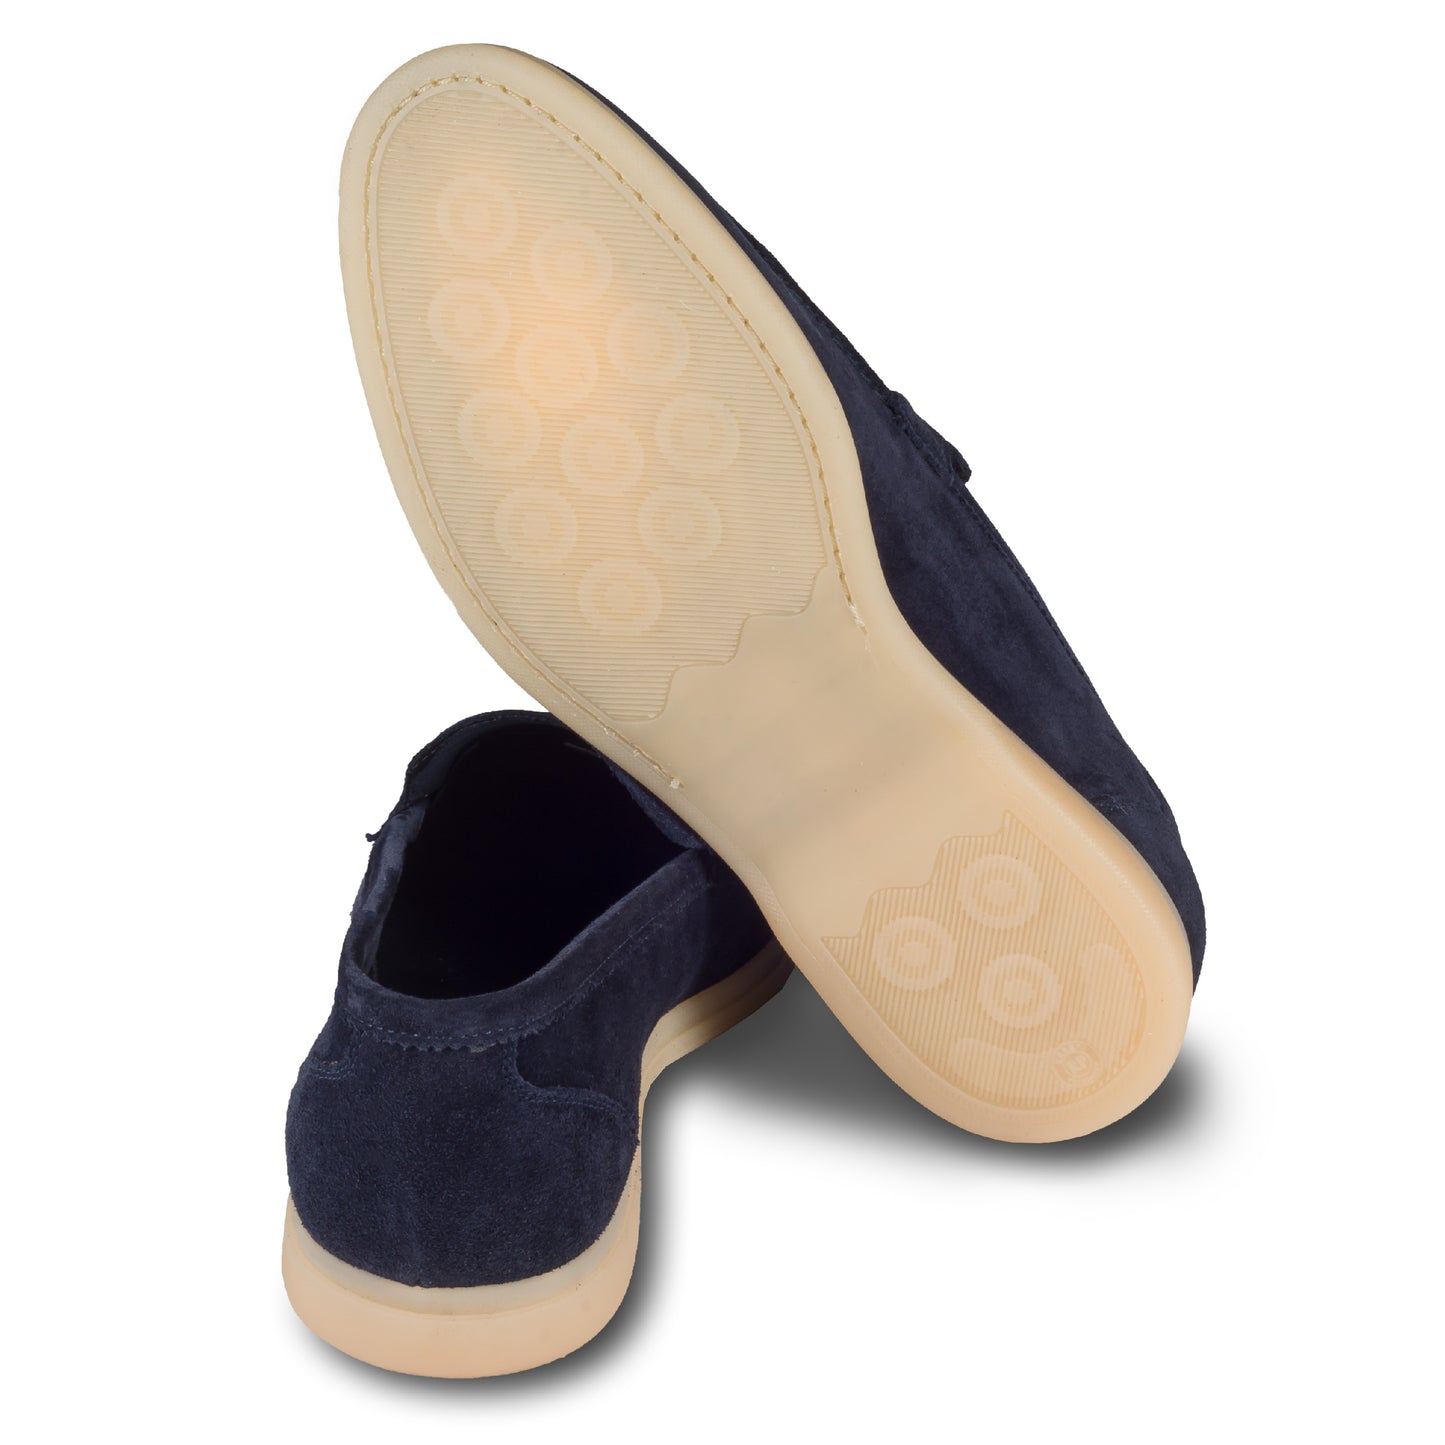 Brecos Italienische Herren-Loafer aus weichem Veloursleder in blau. Mit leichter Gummisohle.  Ansicht der Ferse und Sohlenunterseite. 